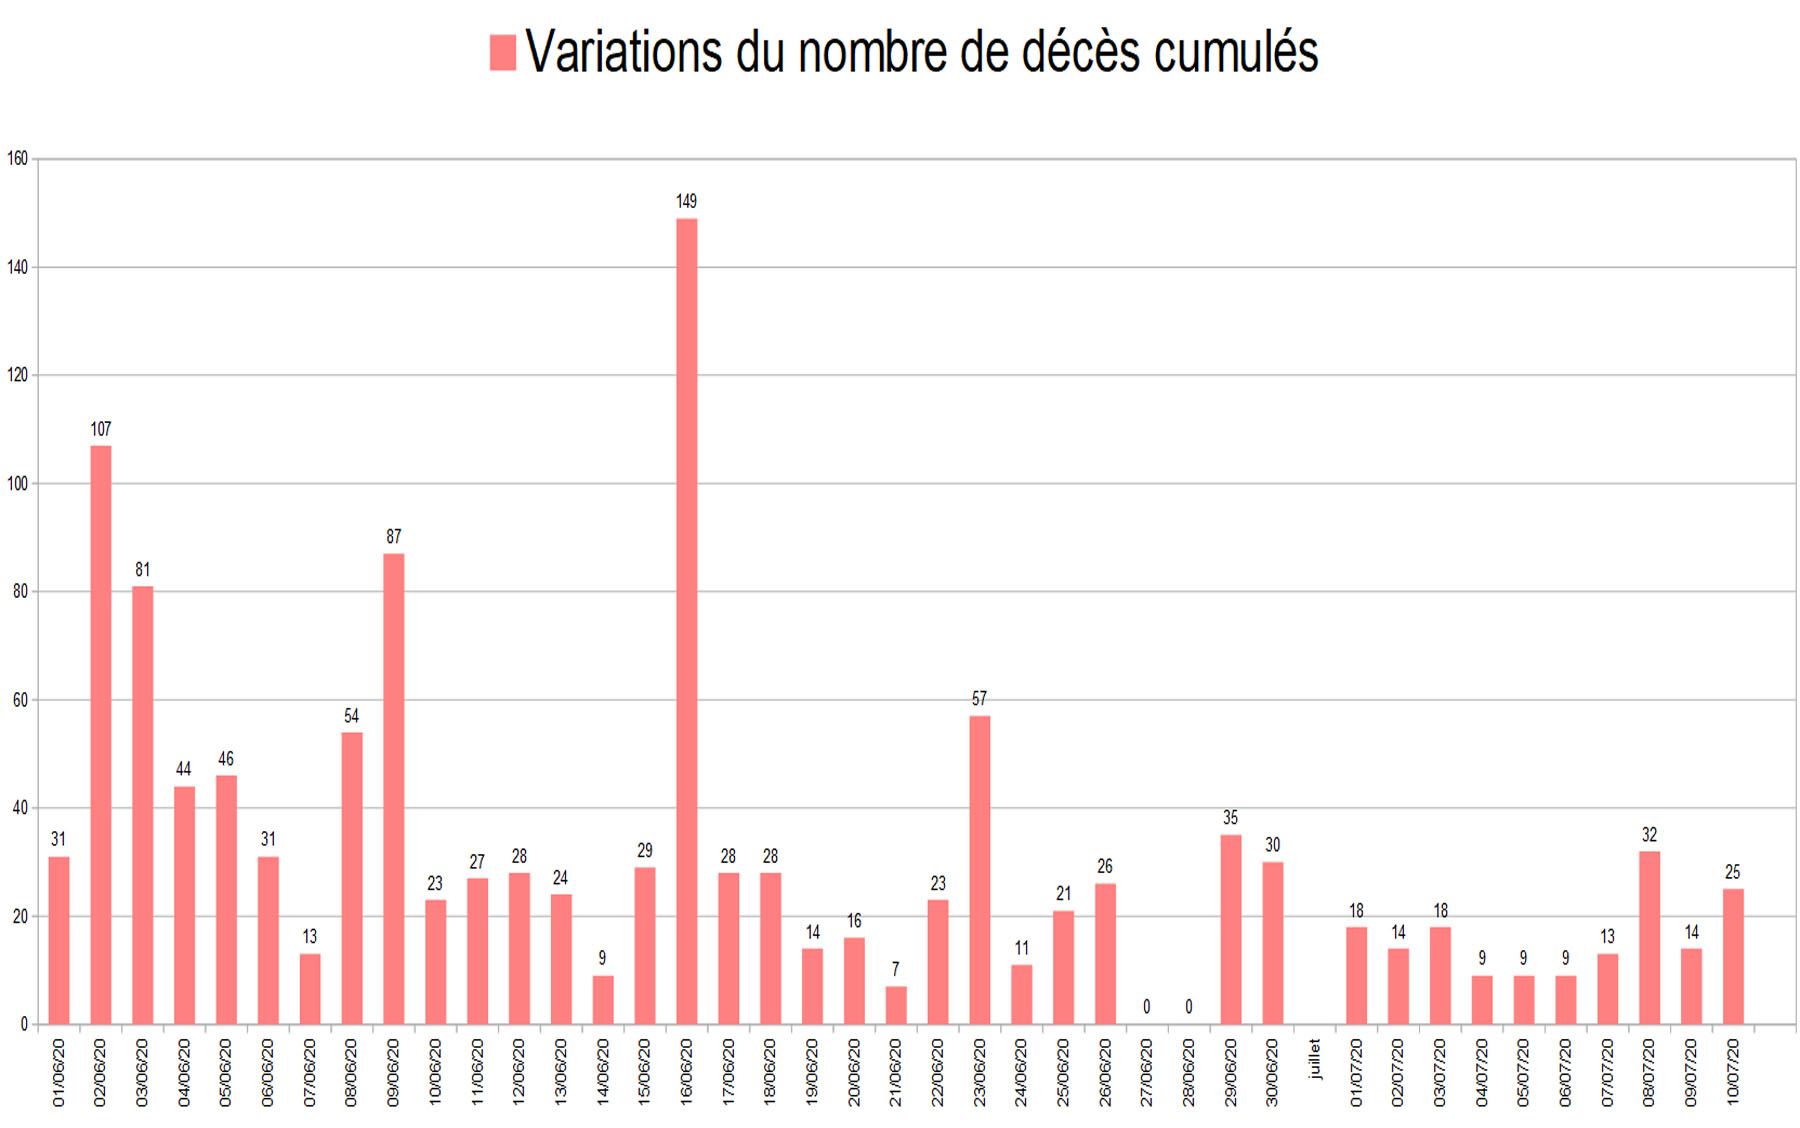 graphiquedepuijuin8_variation nombre de deces cumules.jpg